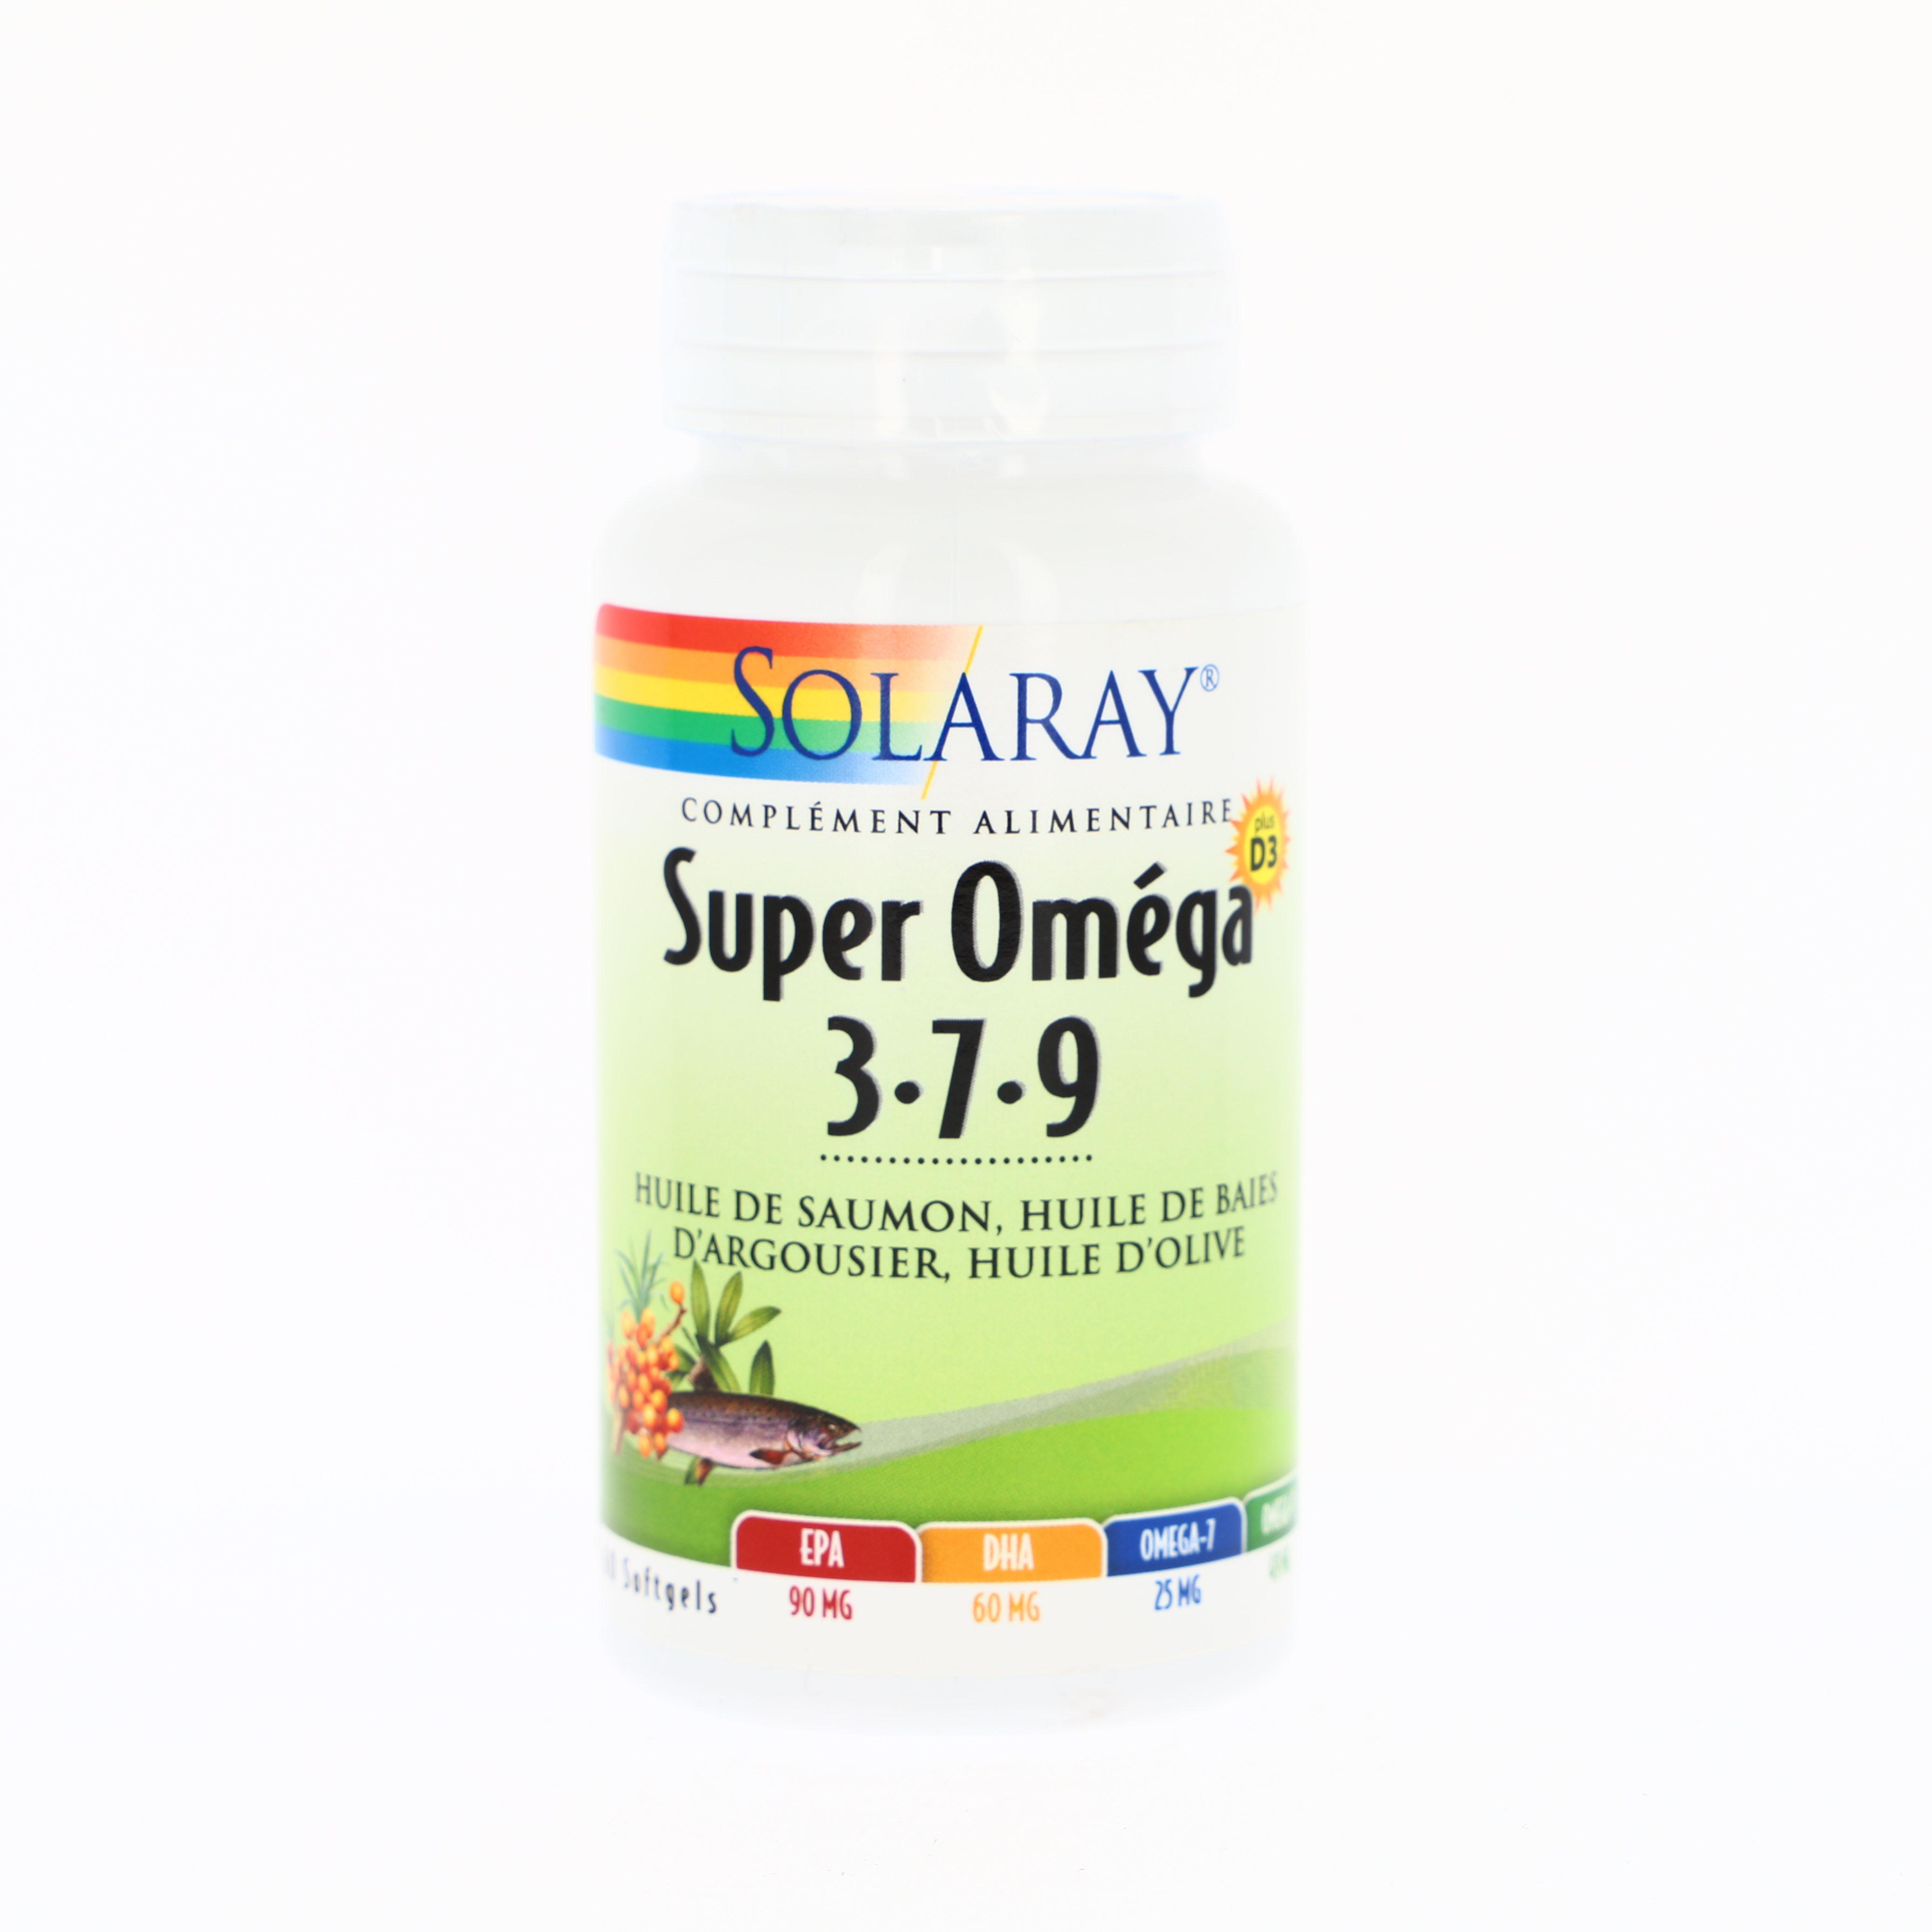 Super Oméga 3-7-9 plus Vitamine D - 60 softgels